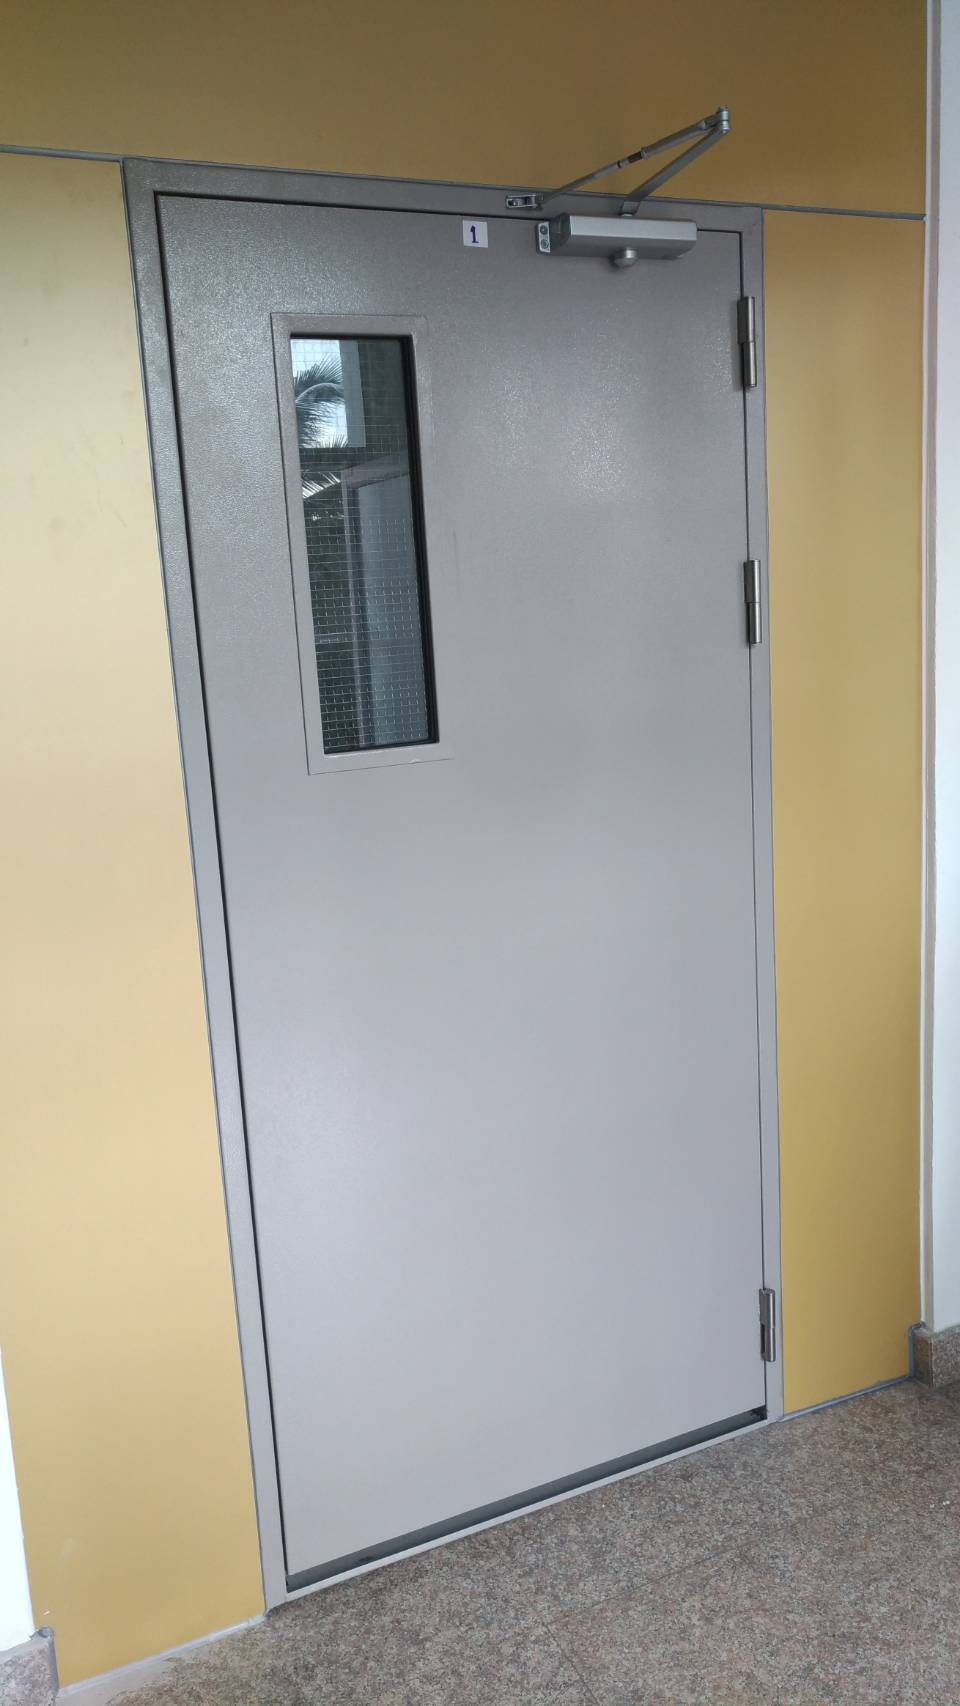 ขาย  ประตูเหล็ก ประตูหนีไฟ วงกบเหล็กงานต่างๆ ประตูไฟเบอร์กลาส ขายถูกๆโรงงานมาเอง  ติดต่อฝน 088-5576671